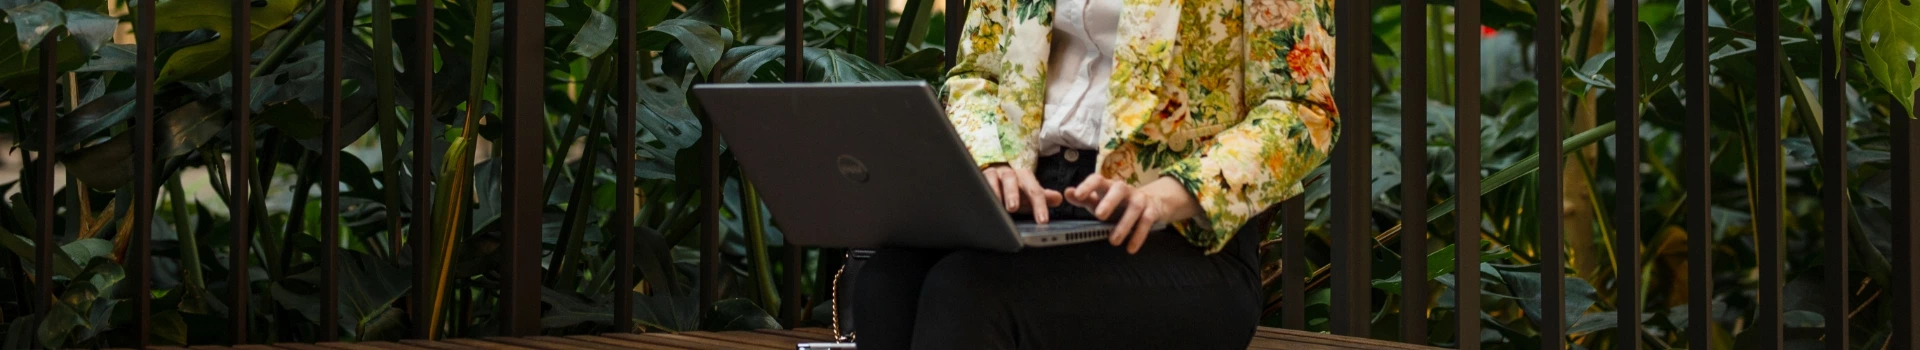 Kobieta pracująca na laptopie